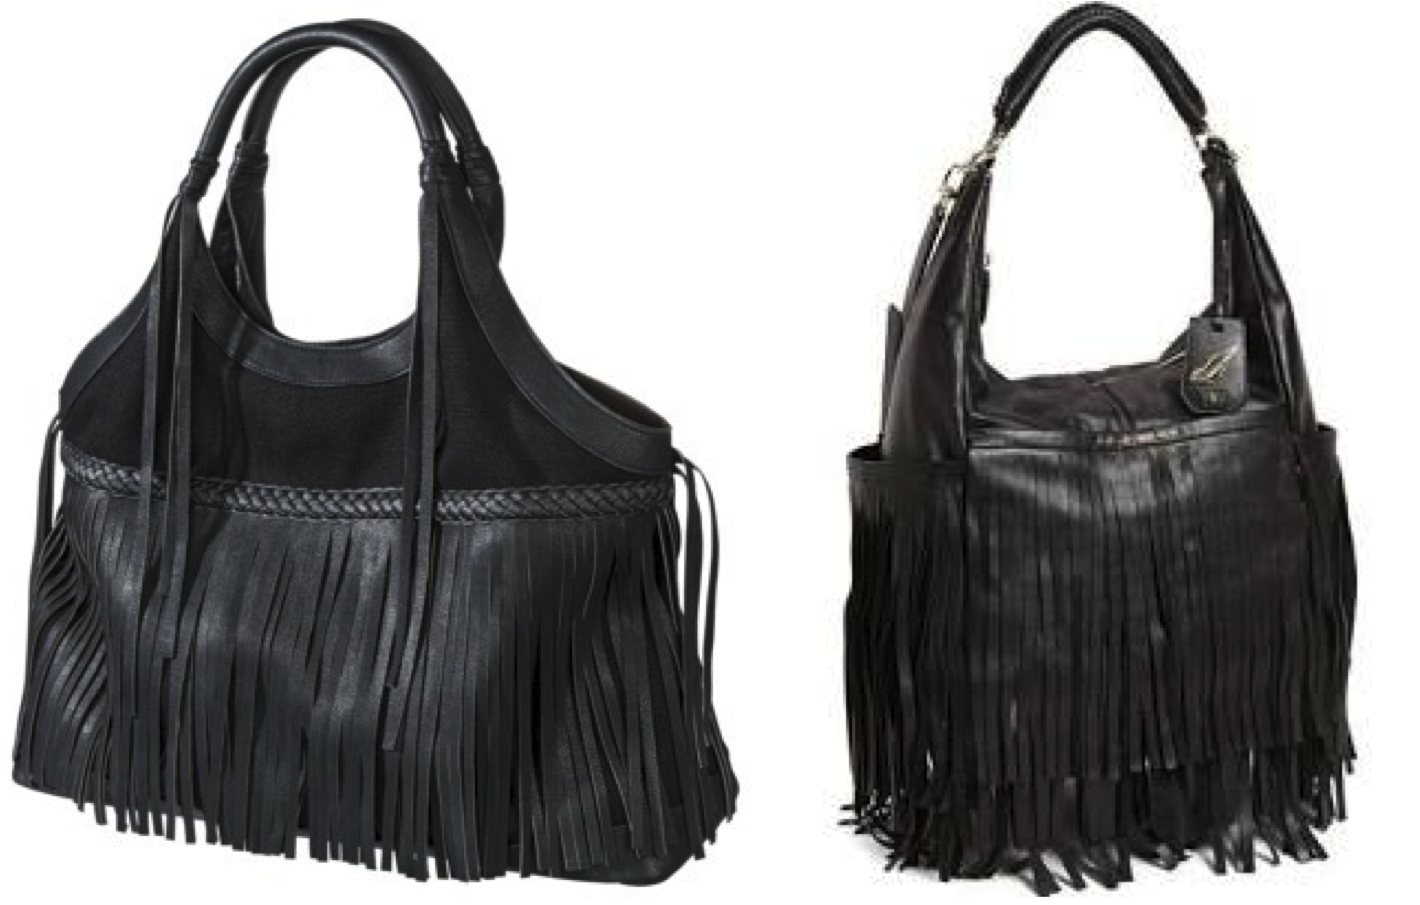 Steal Splurge - Black Fringe Bag